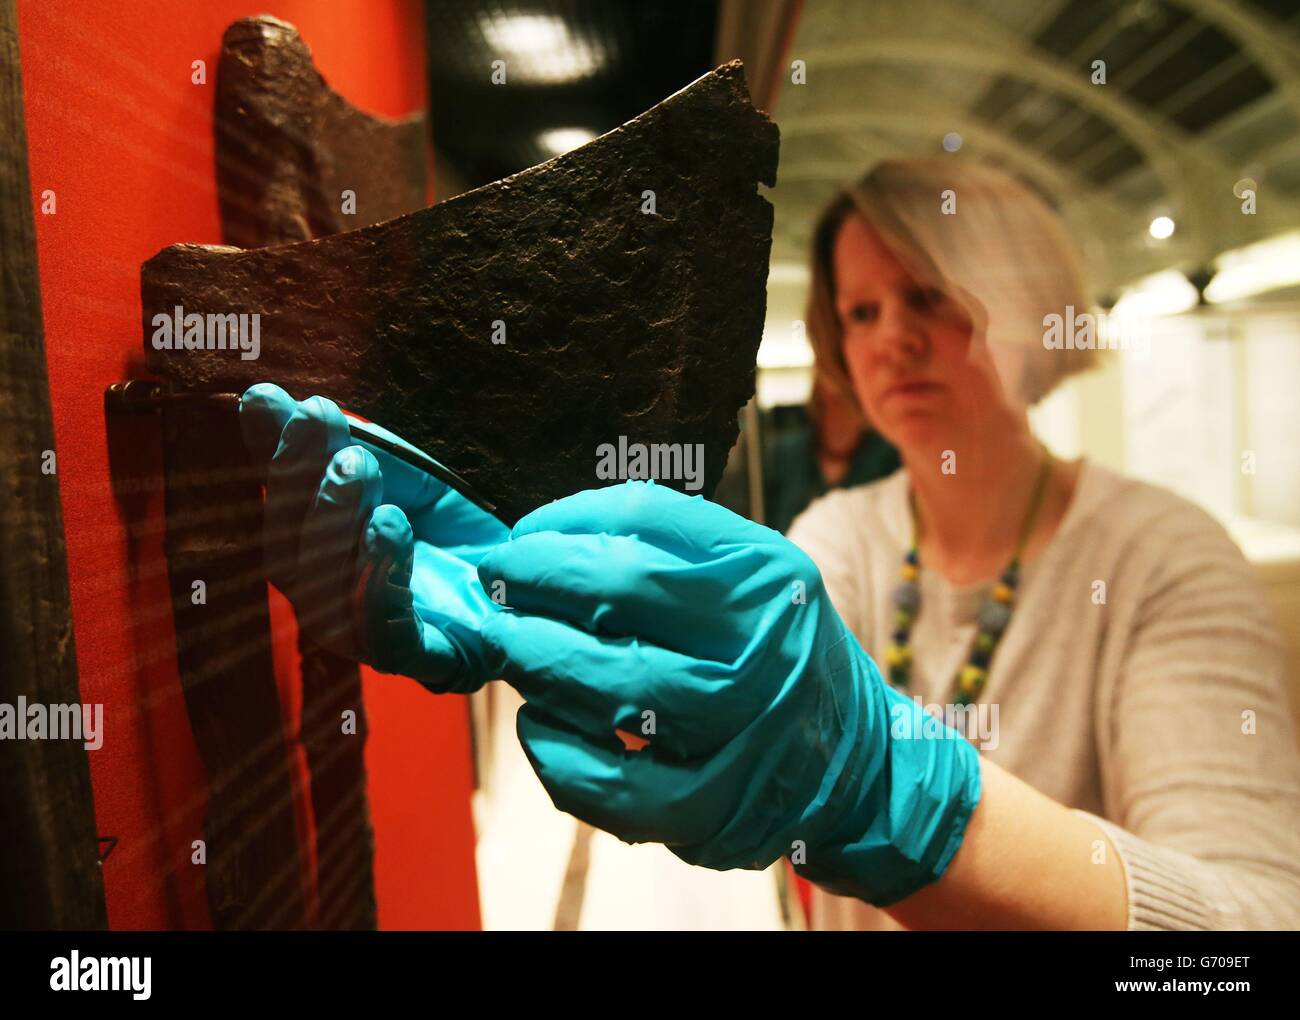 La conservadora Carol Smith hace ajustes a los hachas vikingos que fueron encontrados en Lough Corrib en 2013, en el lanzamiento de dos exposiciones, en el Museo Nacional de Irlanda, Dublín, para conmemorar el 1000th aniversario de la Batalla de Clontarf. Foto de stock